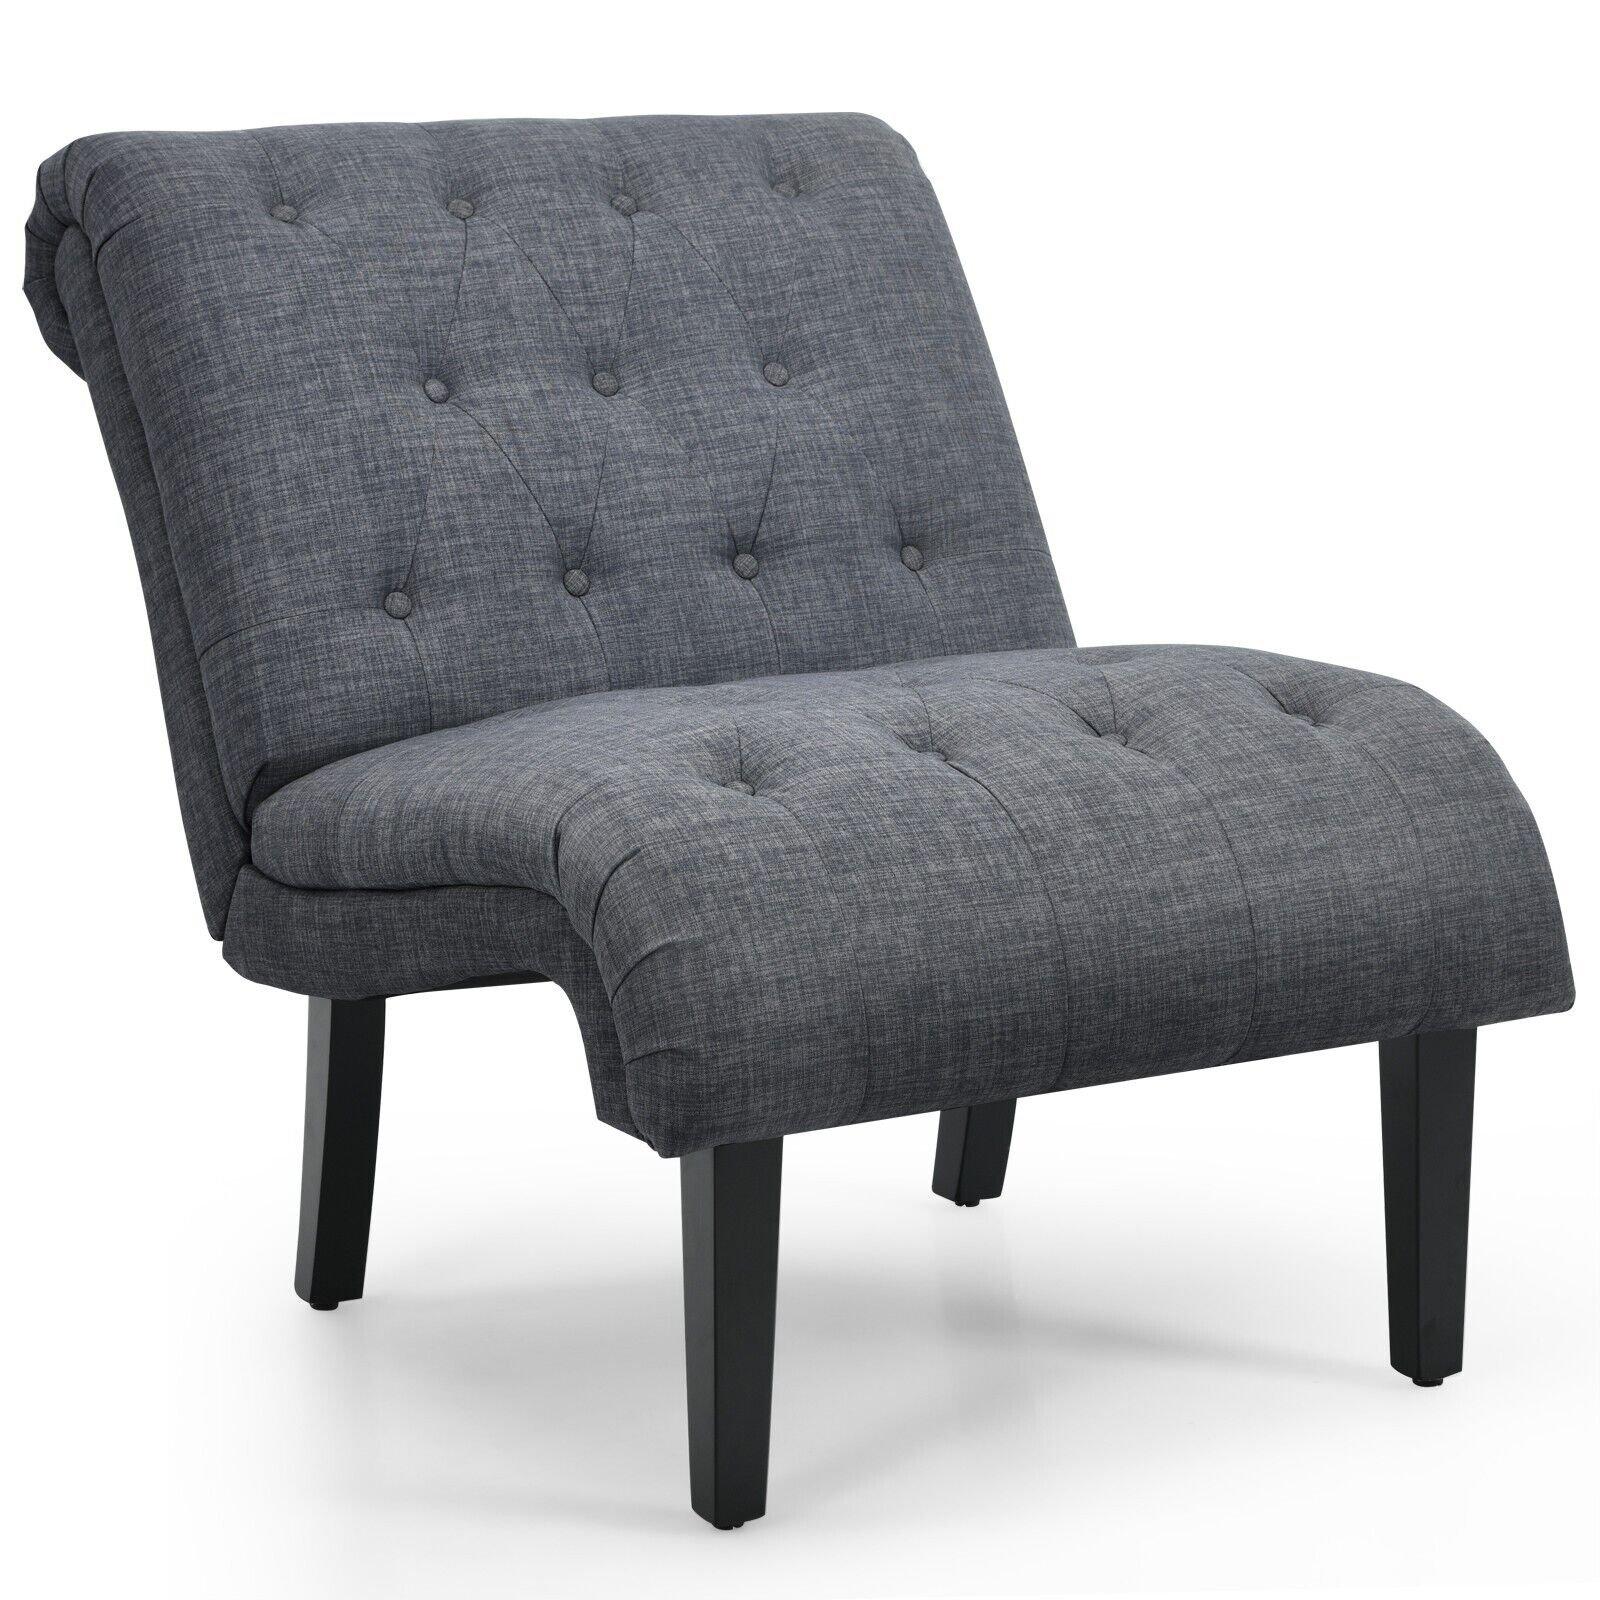 Modern Armless Accent Chair Ergonomic Leisure Chair W/ Backrest & Overstuffed Seat